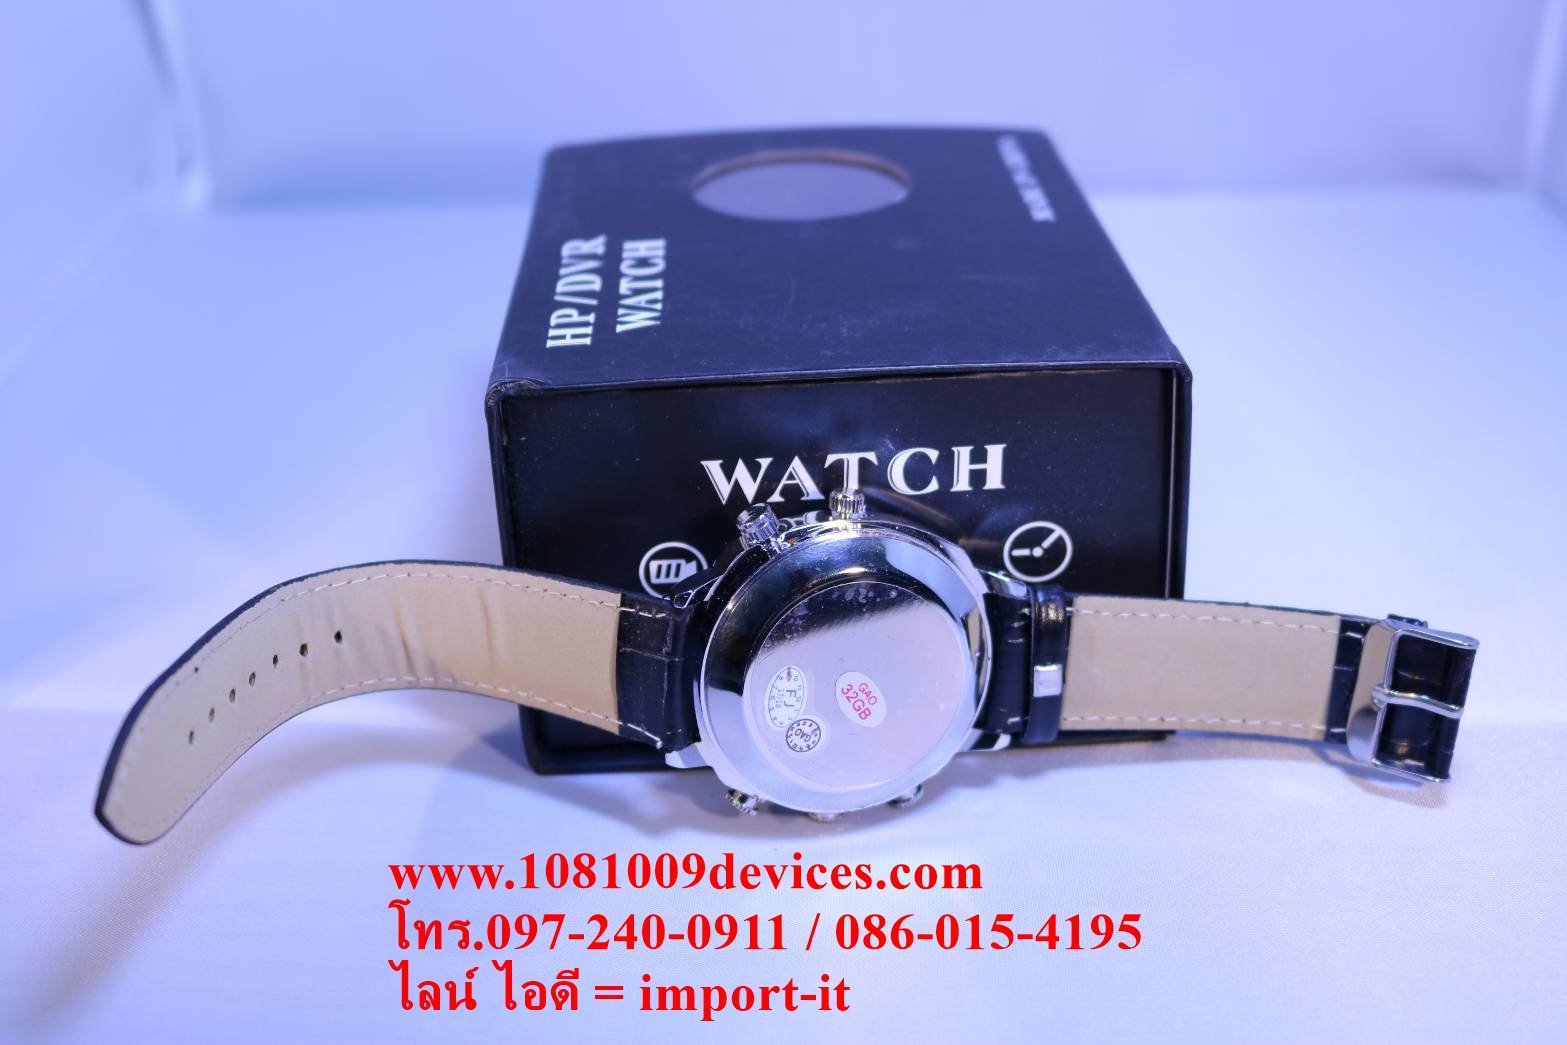 ซื้อ กล้องนาฬิกาข้อมือ Spy Watch กล้องแอบถ่าย นาฬิกาข้อมือ บันทึกวีดีโอพร้อมเสียง